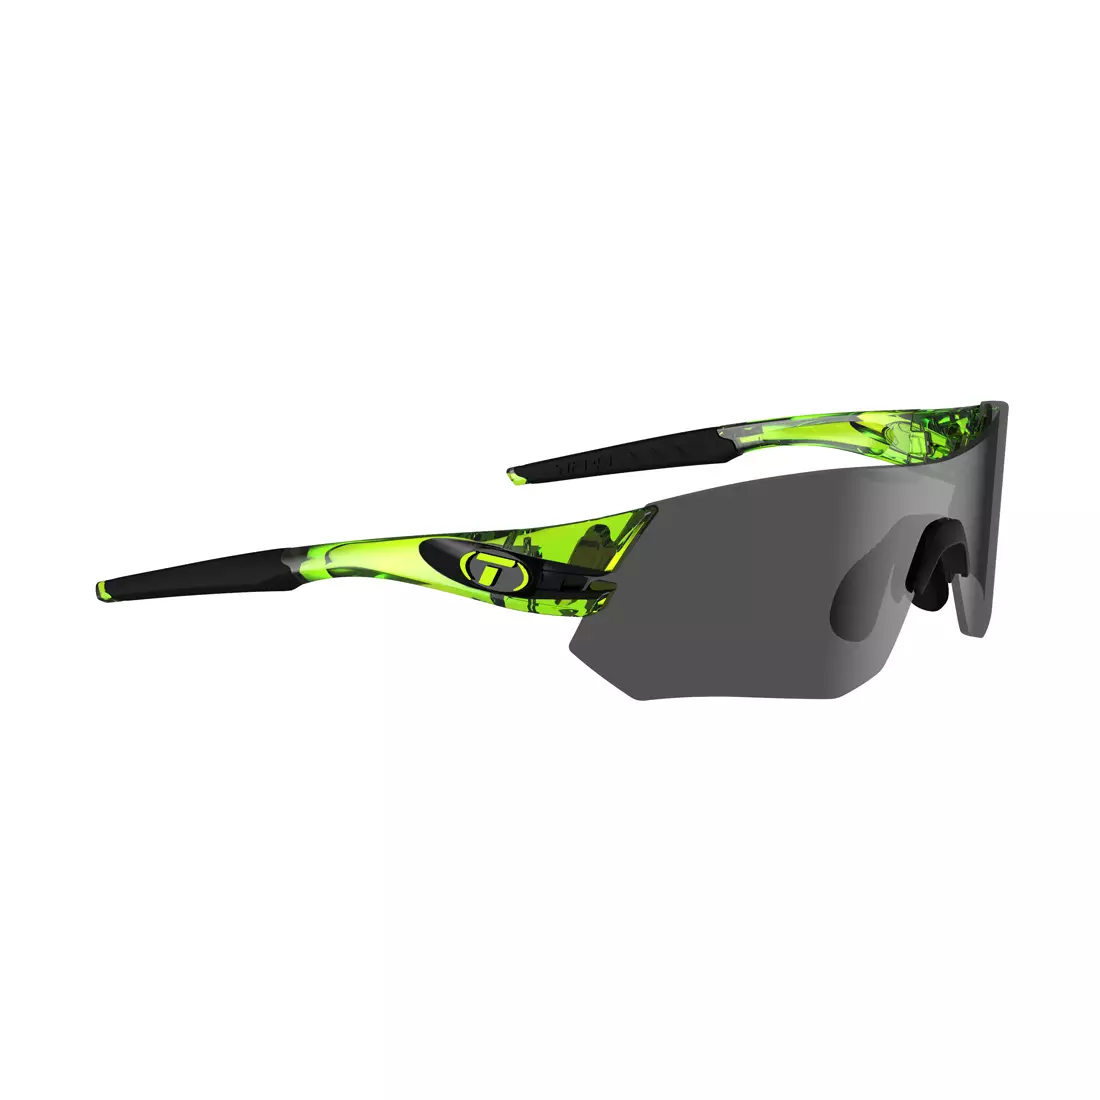 TIFOSI okulary z wymiennymi szkłami TSALI (Smoke, AC Red, Clear) crystal neon green TFI-1640105670